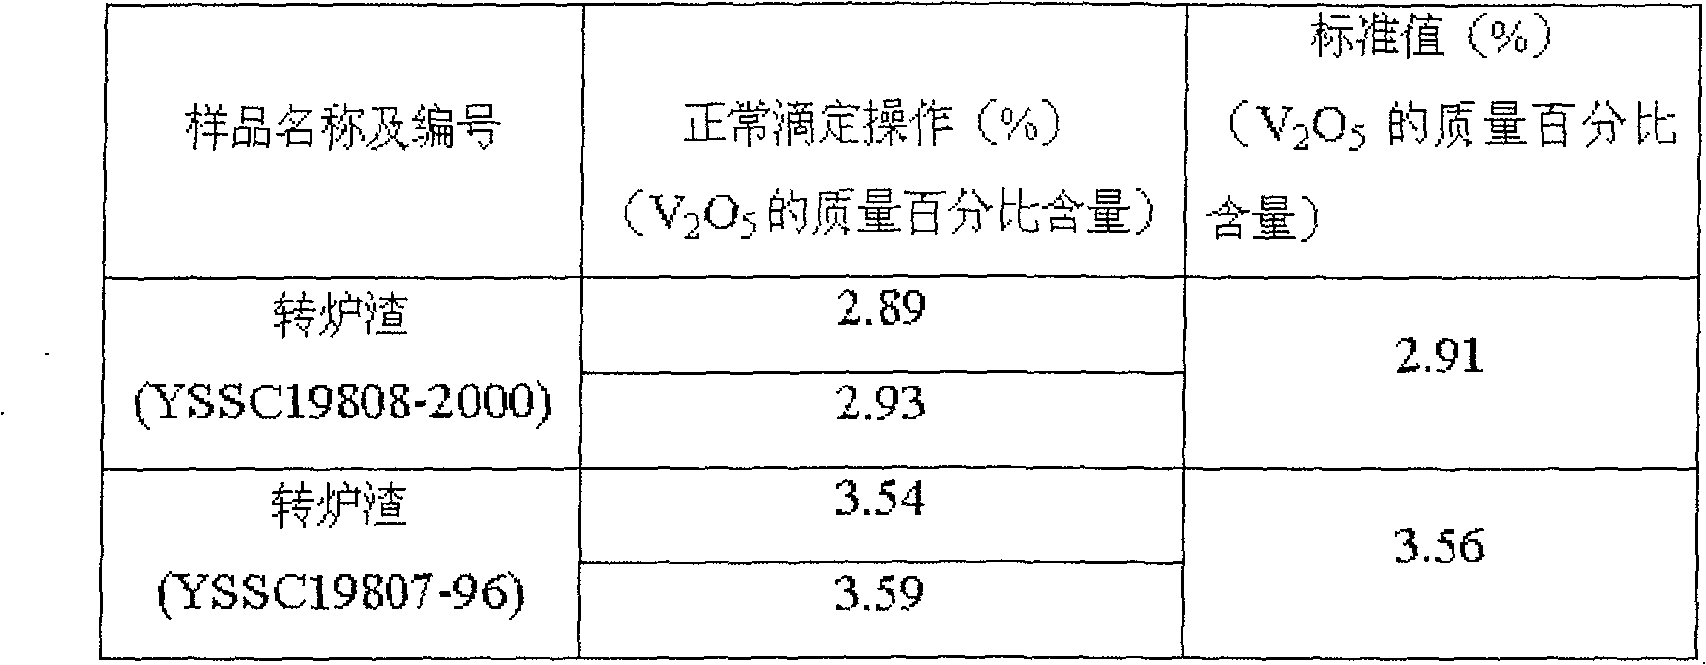 Method for eliminating error when measuring vanadium by ferrous ammonium sulfate capacitance method